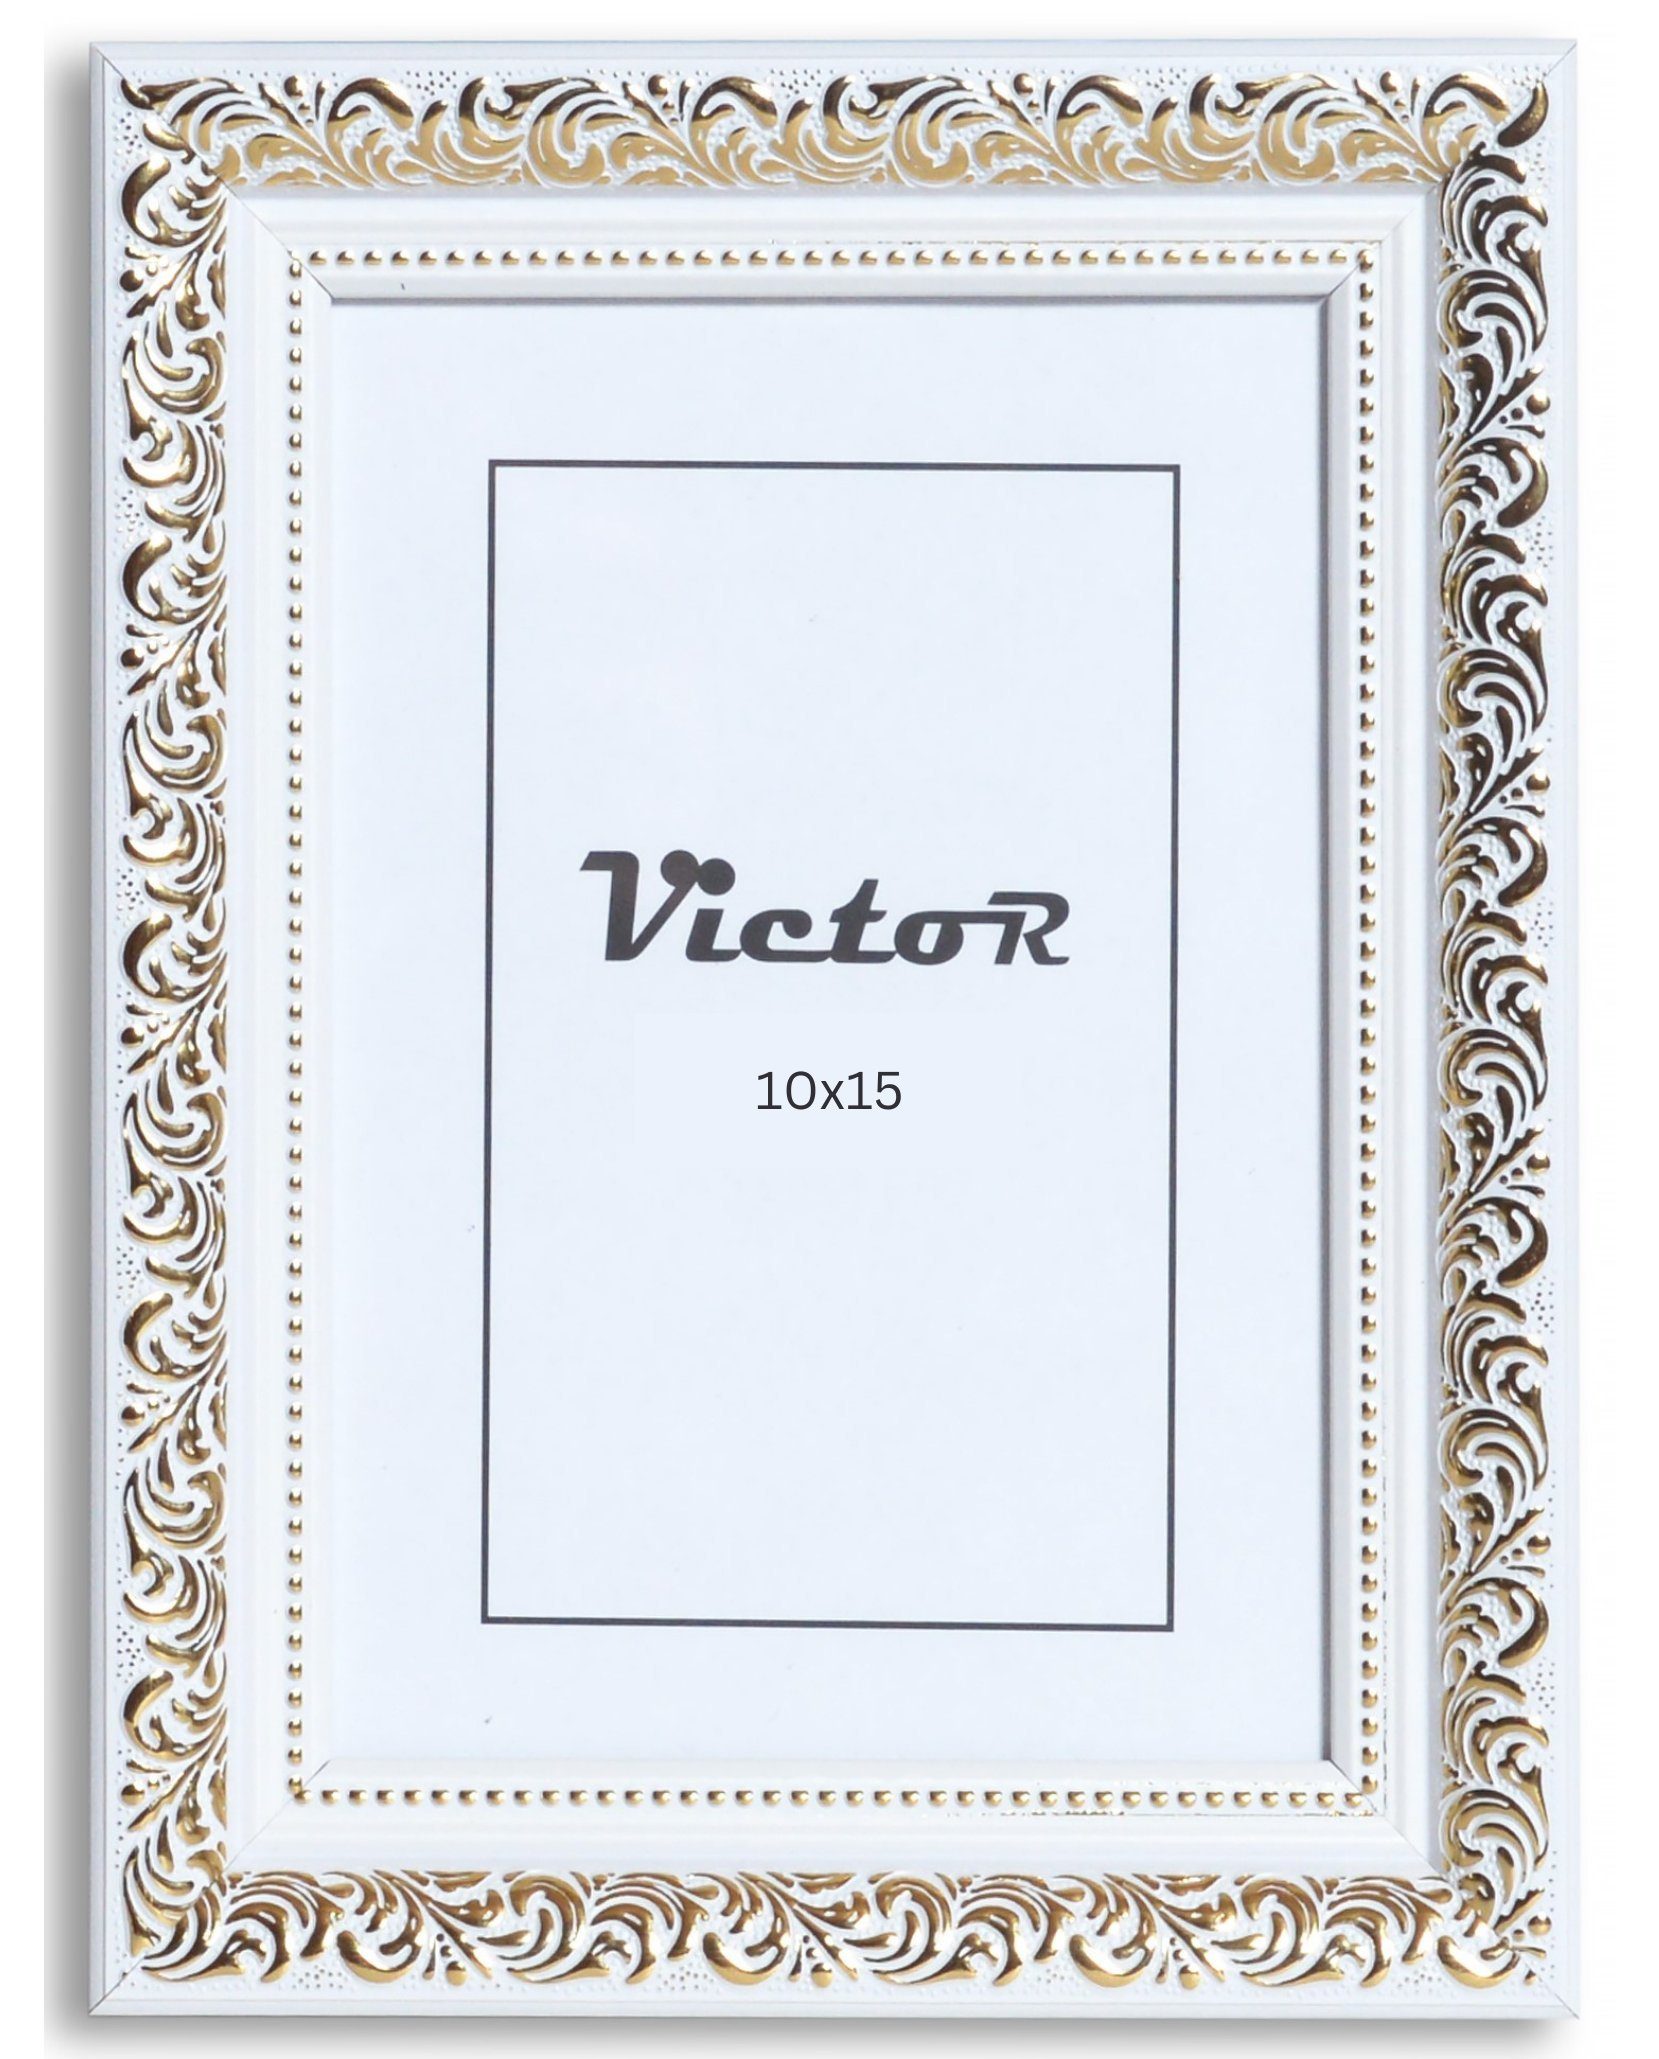 Victor (Zenith) Bilderrahmen Rubens, Bilderrahmen 10x15 cm Weiß Gold A6, Bilderrahmen Barock, Antik